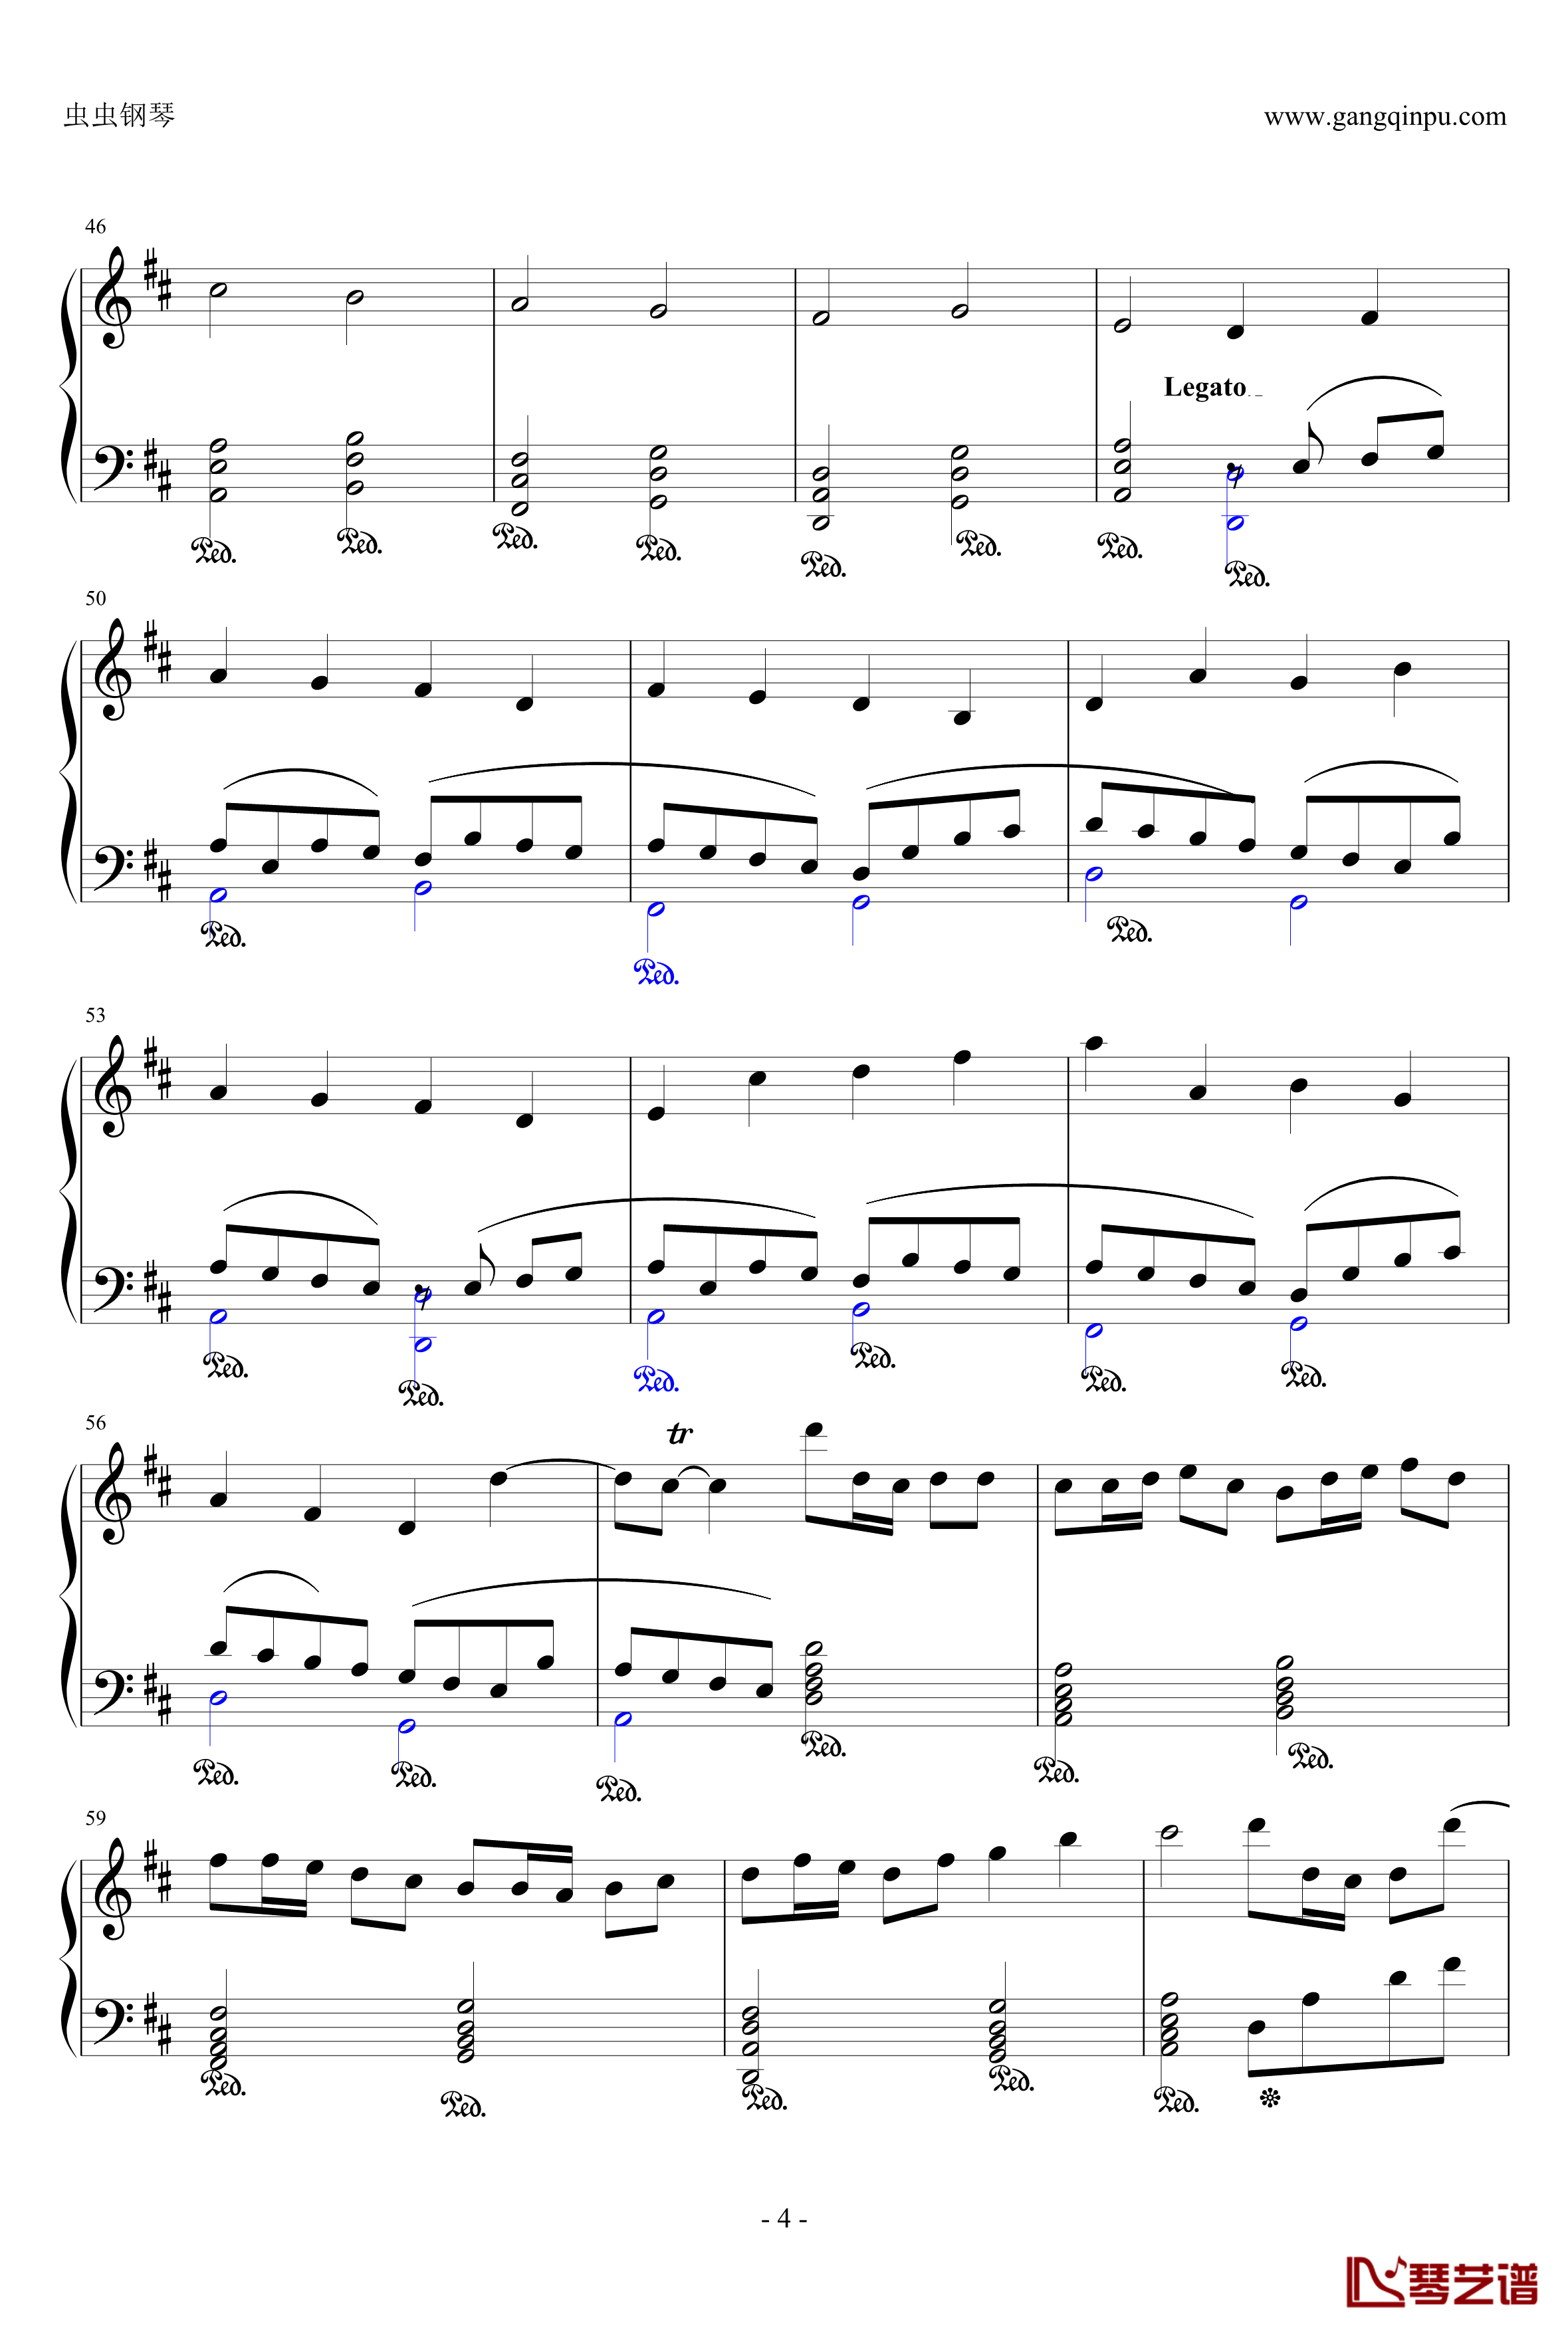 卡农：大爱人间钢琴谱-完整版-帕赫贝尔-Pachelbel4